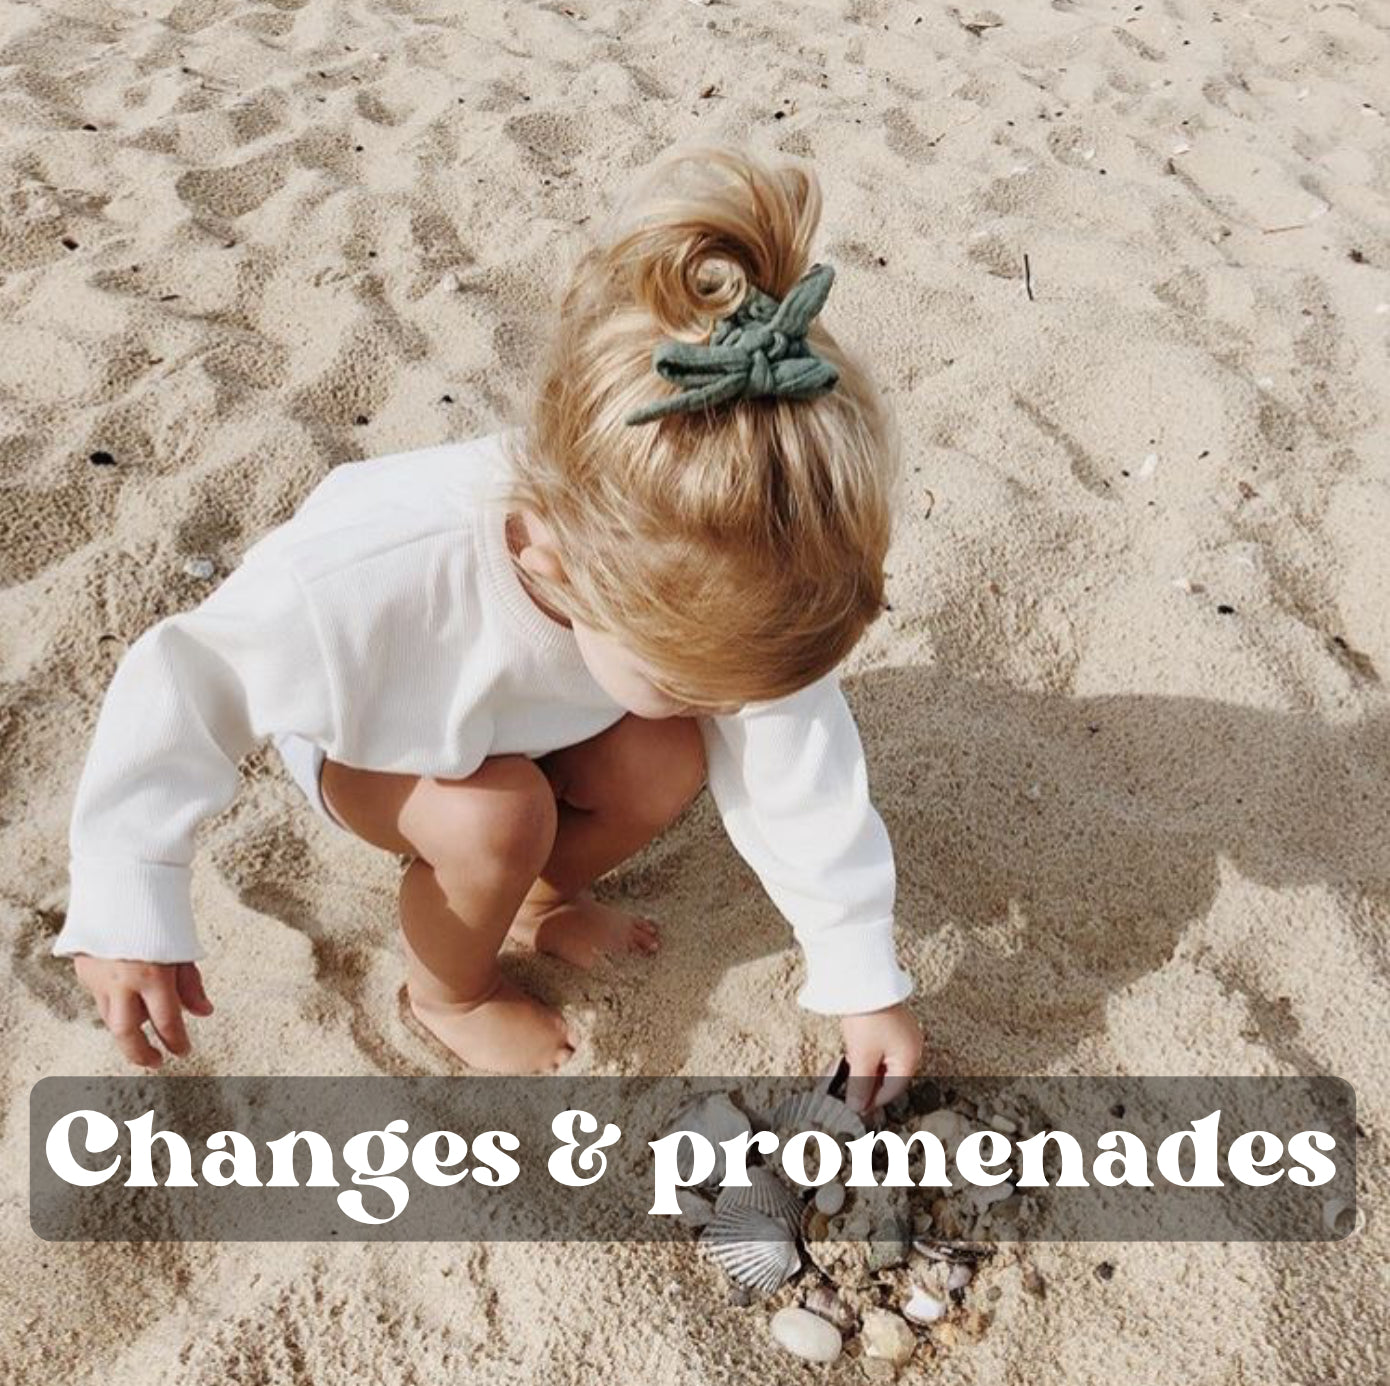 Changes & promenades